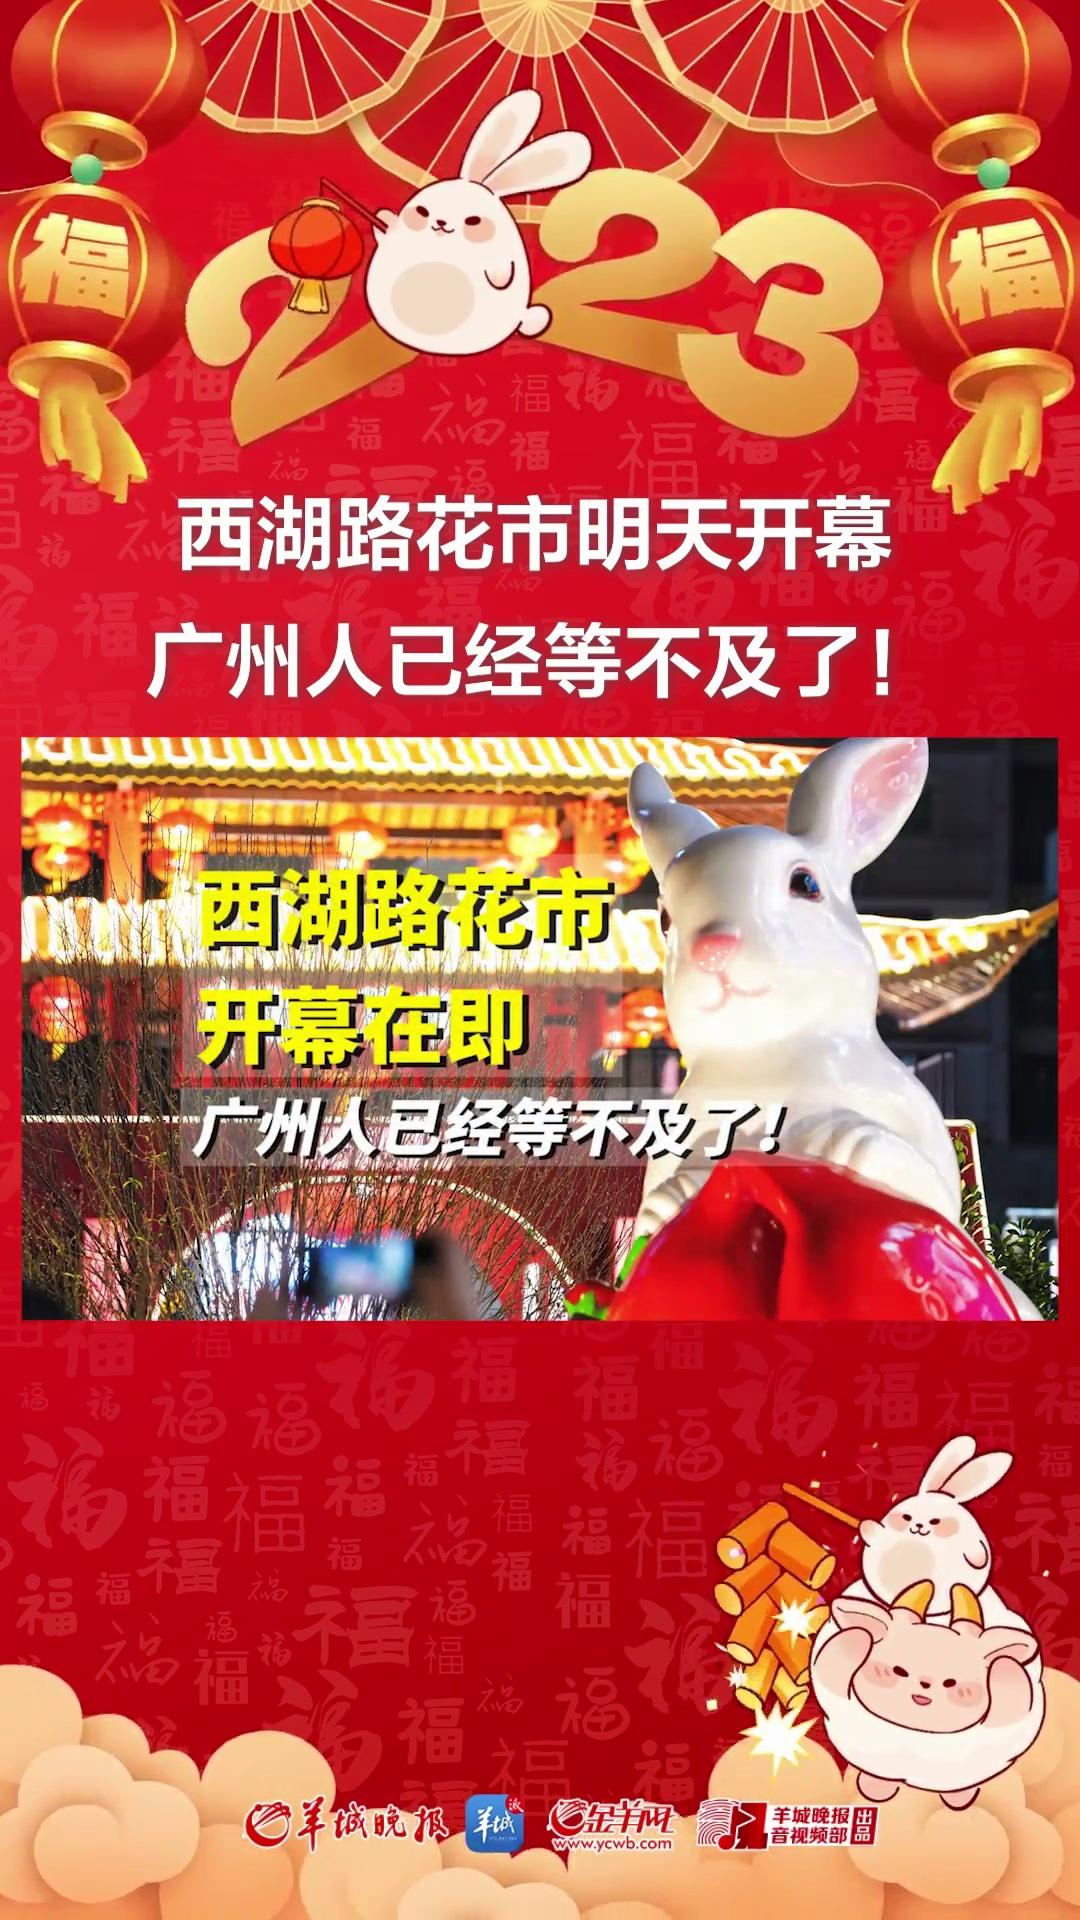 【“兔”飞猛进 活力湾区】西湖路花市明天开幕 广州人已经等不及了！